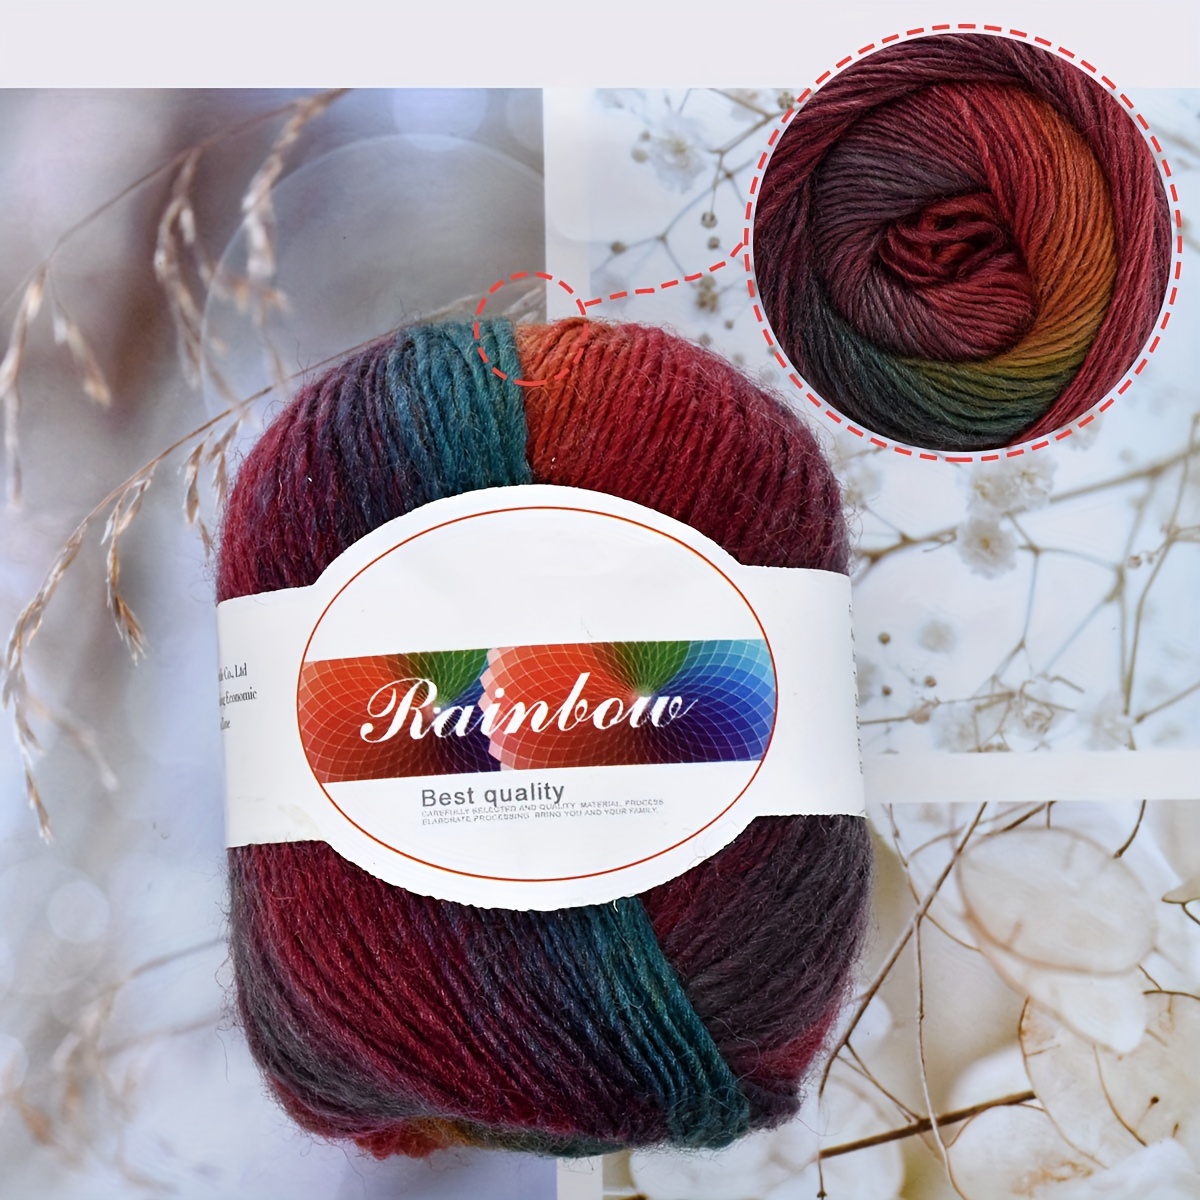 50g 140m/153yd Rainbow Soft Yarn 70% Australian wool 30% Imported nylon  Gradient Multi Color Yarn for Crocheting Knit DIY Hand Knitting Yarn